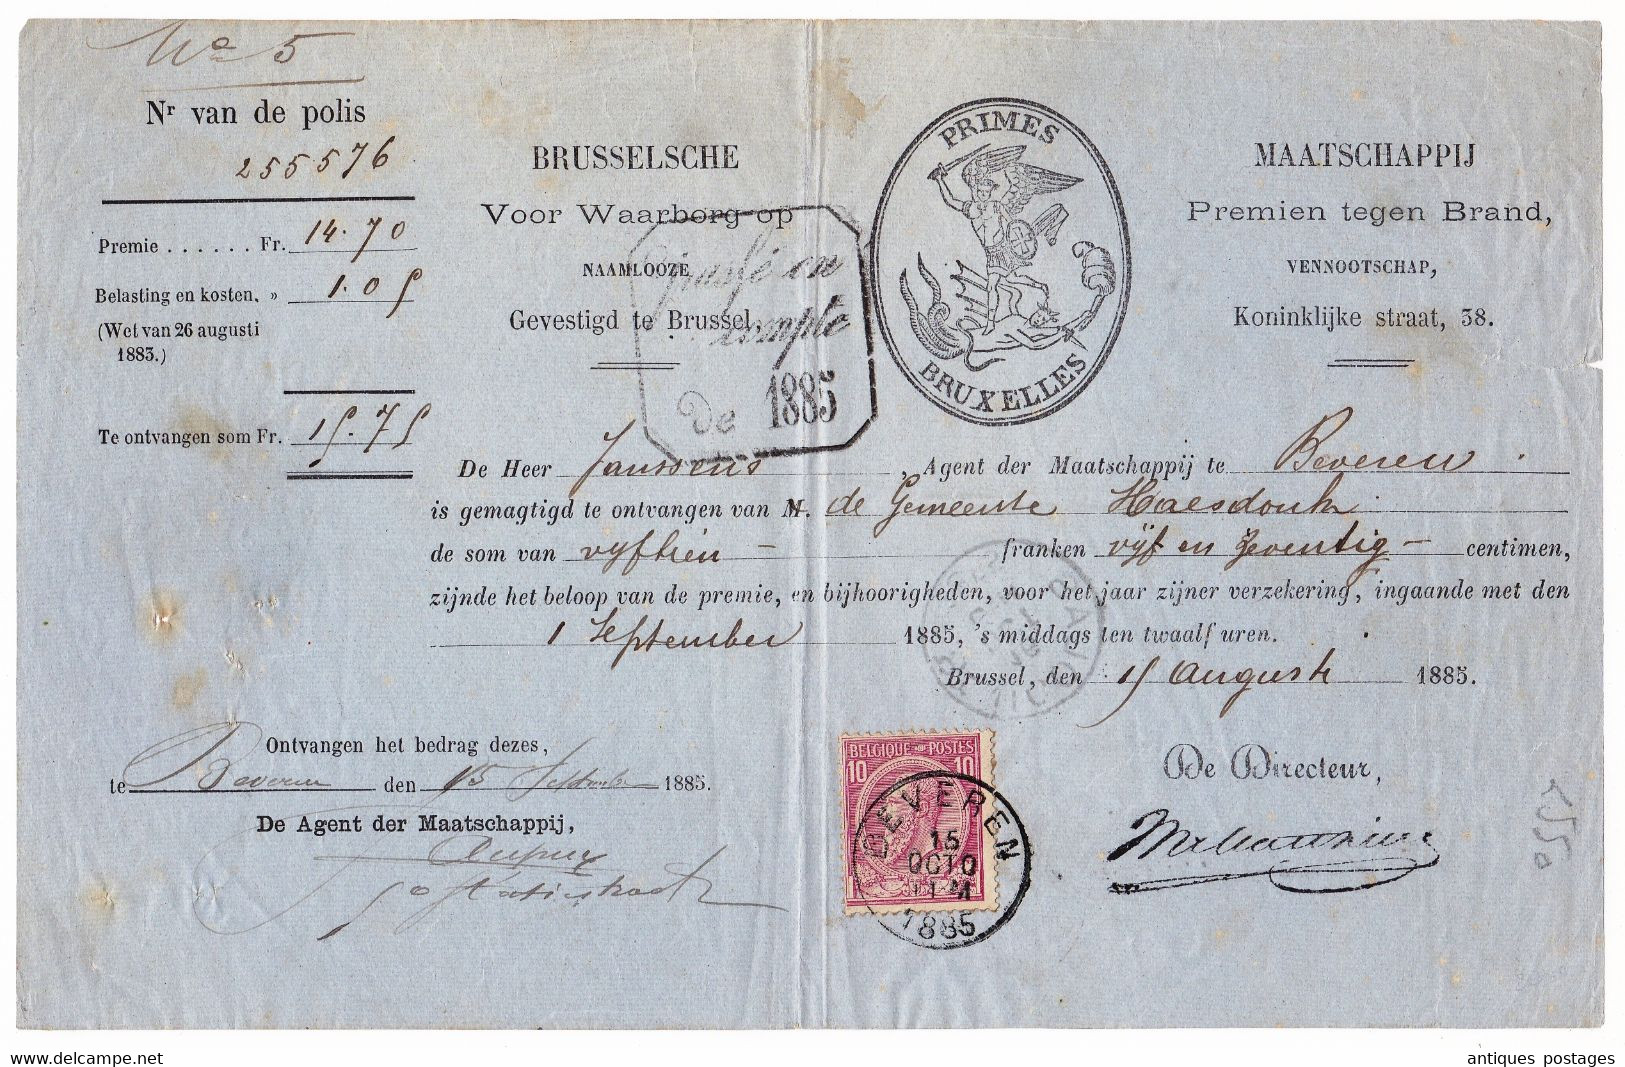 Belgique 1885 Primes Bruxelles Saint-Nicolas Beveren Maatschappij Premien Tegen Brand - 1883 Leopold II